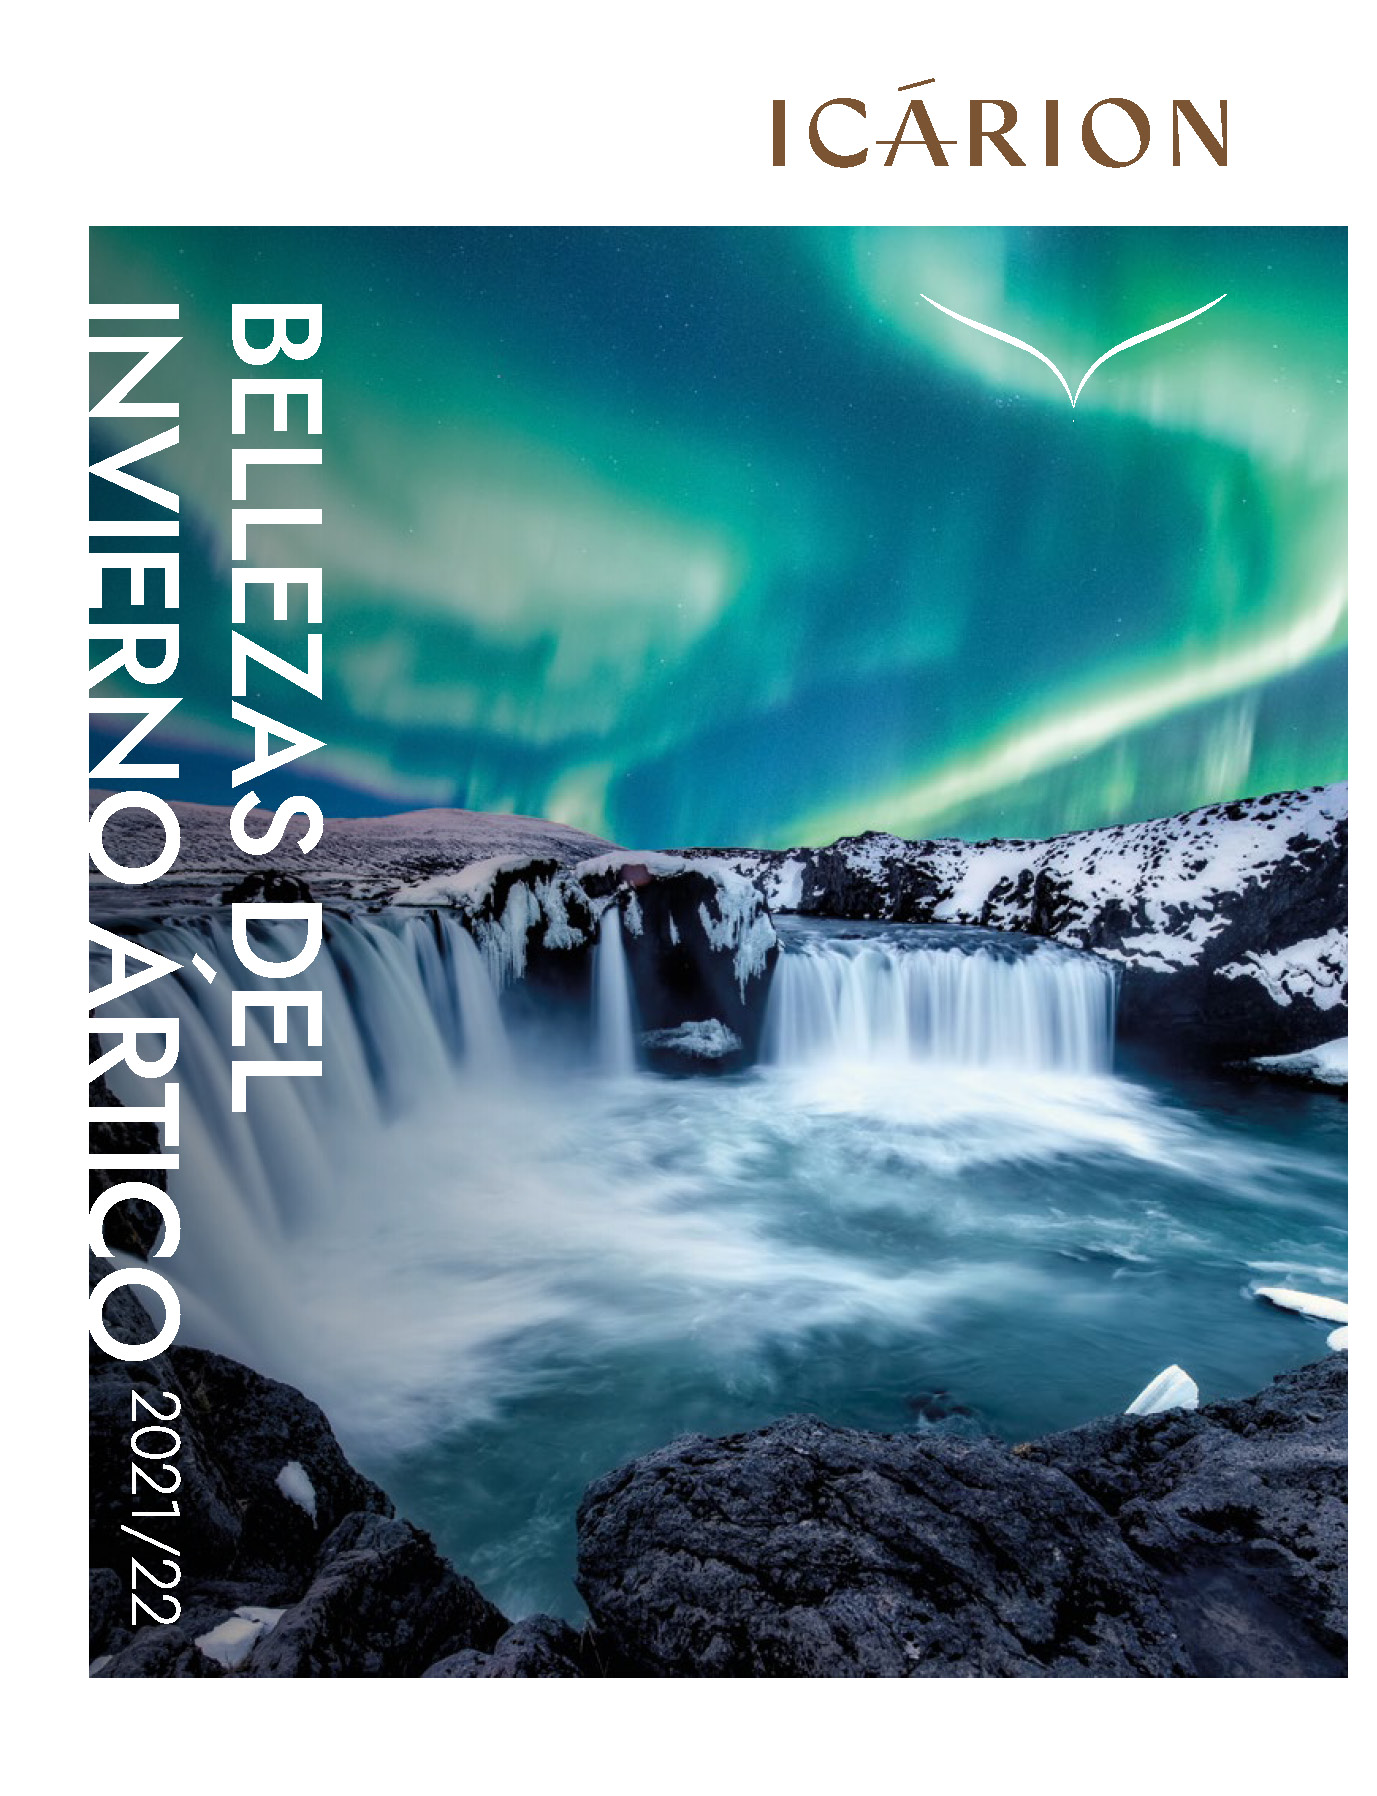 Catalogo Icarion Bellezas del Invierno Artico 2021-2022